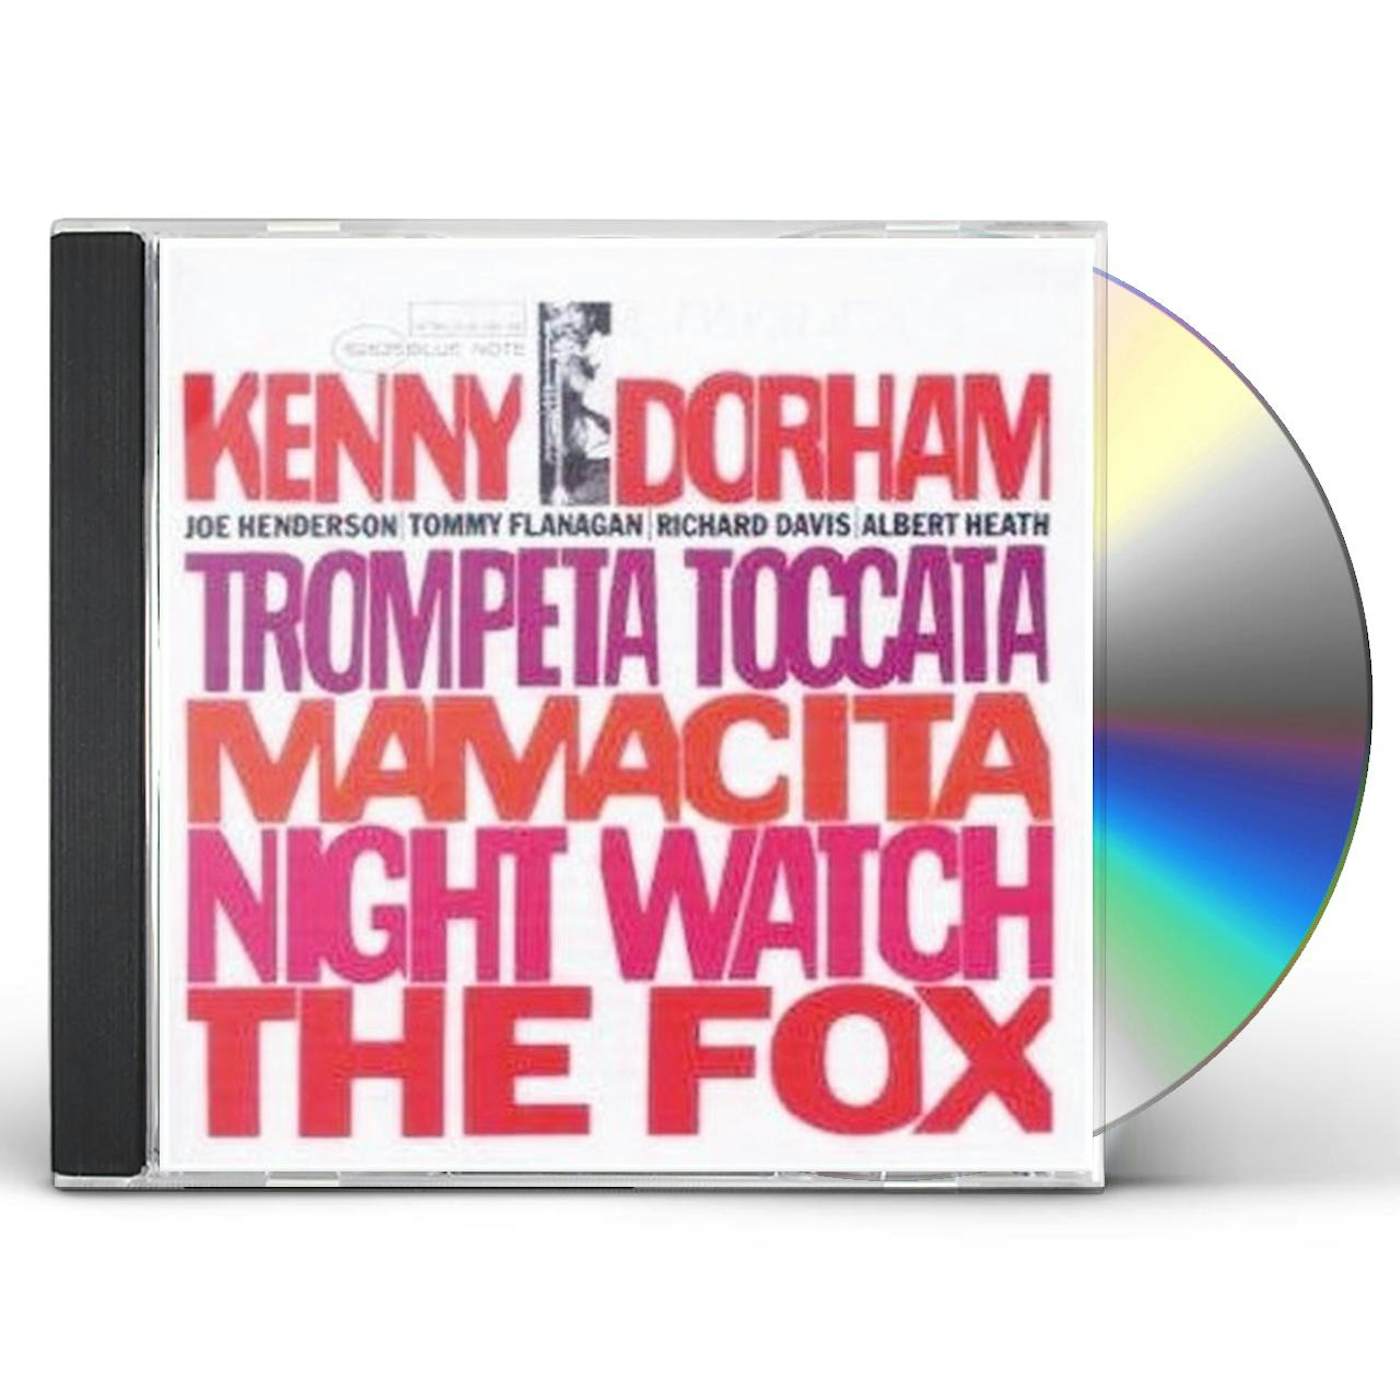 Kenny Dorham TROMPETA TOCCATA CD